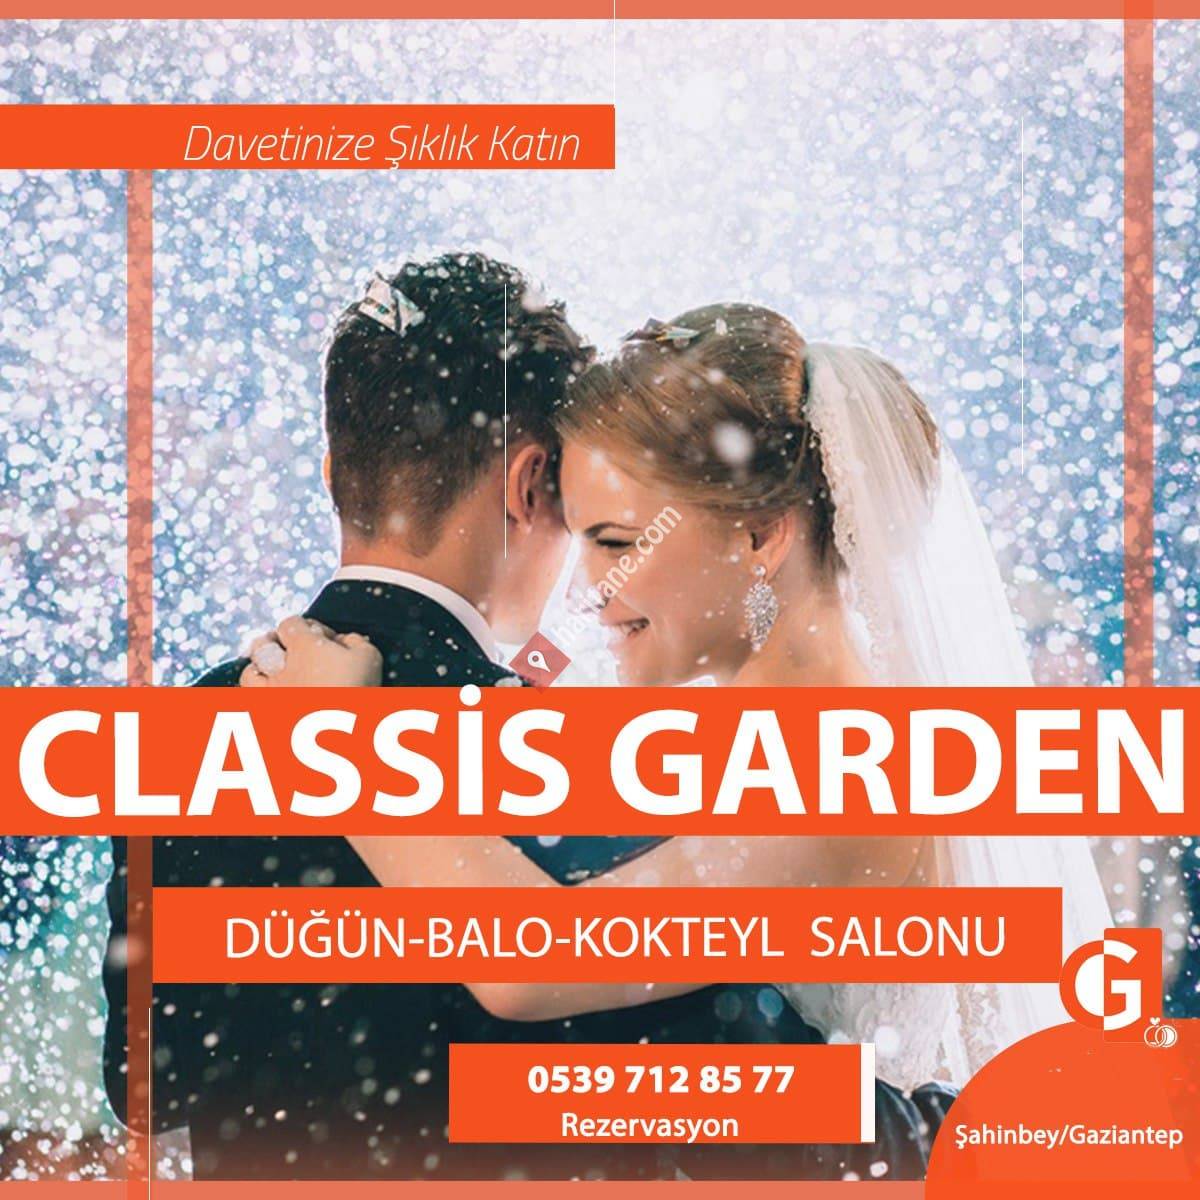 Classis Garden Düğün Organizasyon Havuz Başı Düğün